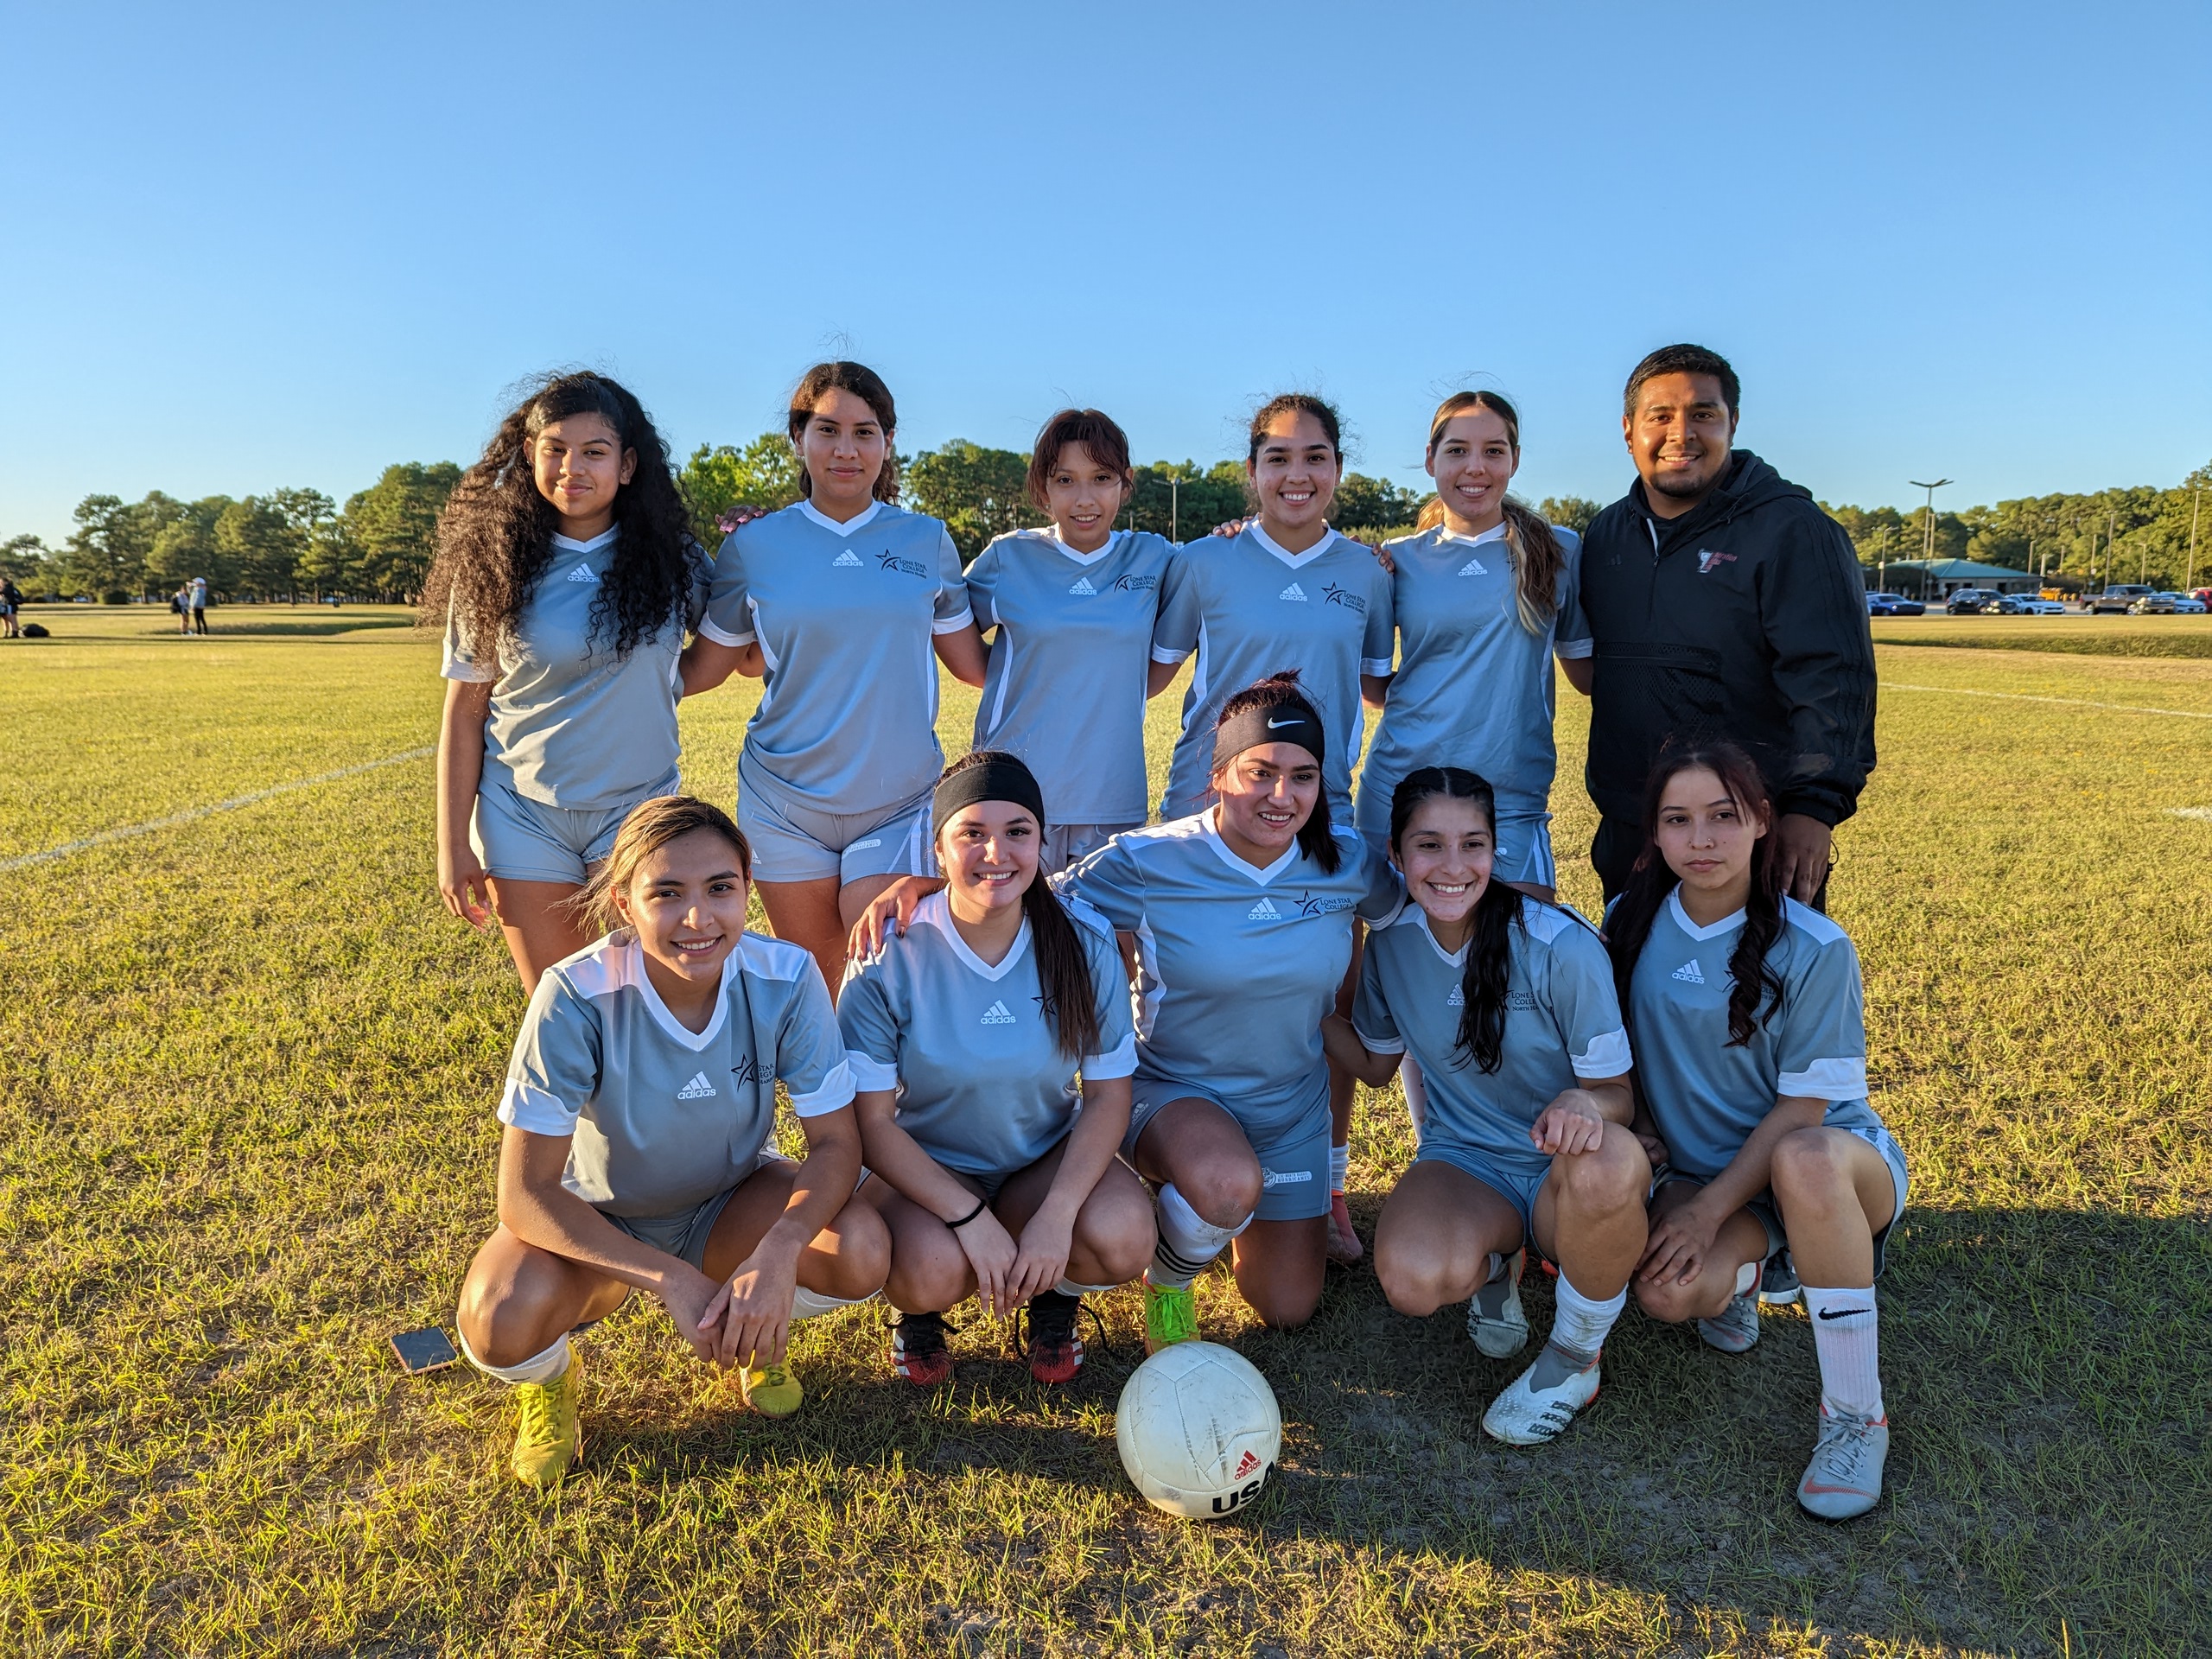 Photo of women's soccer team